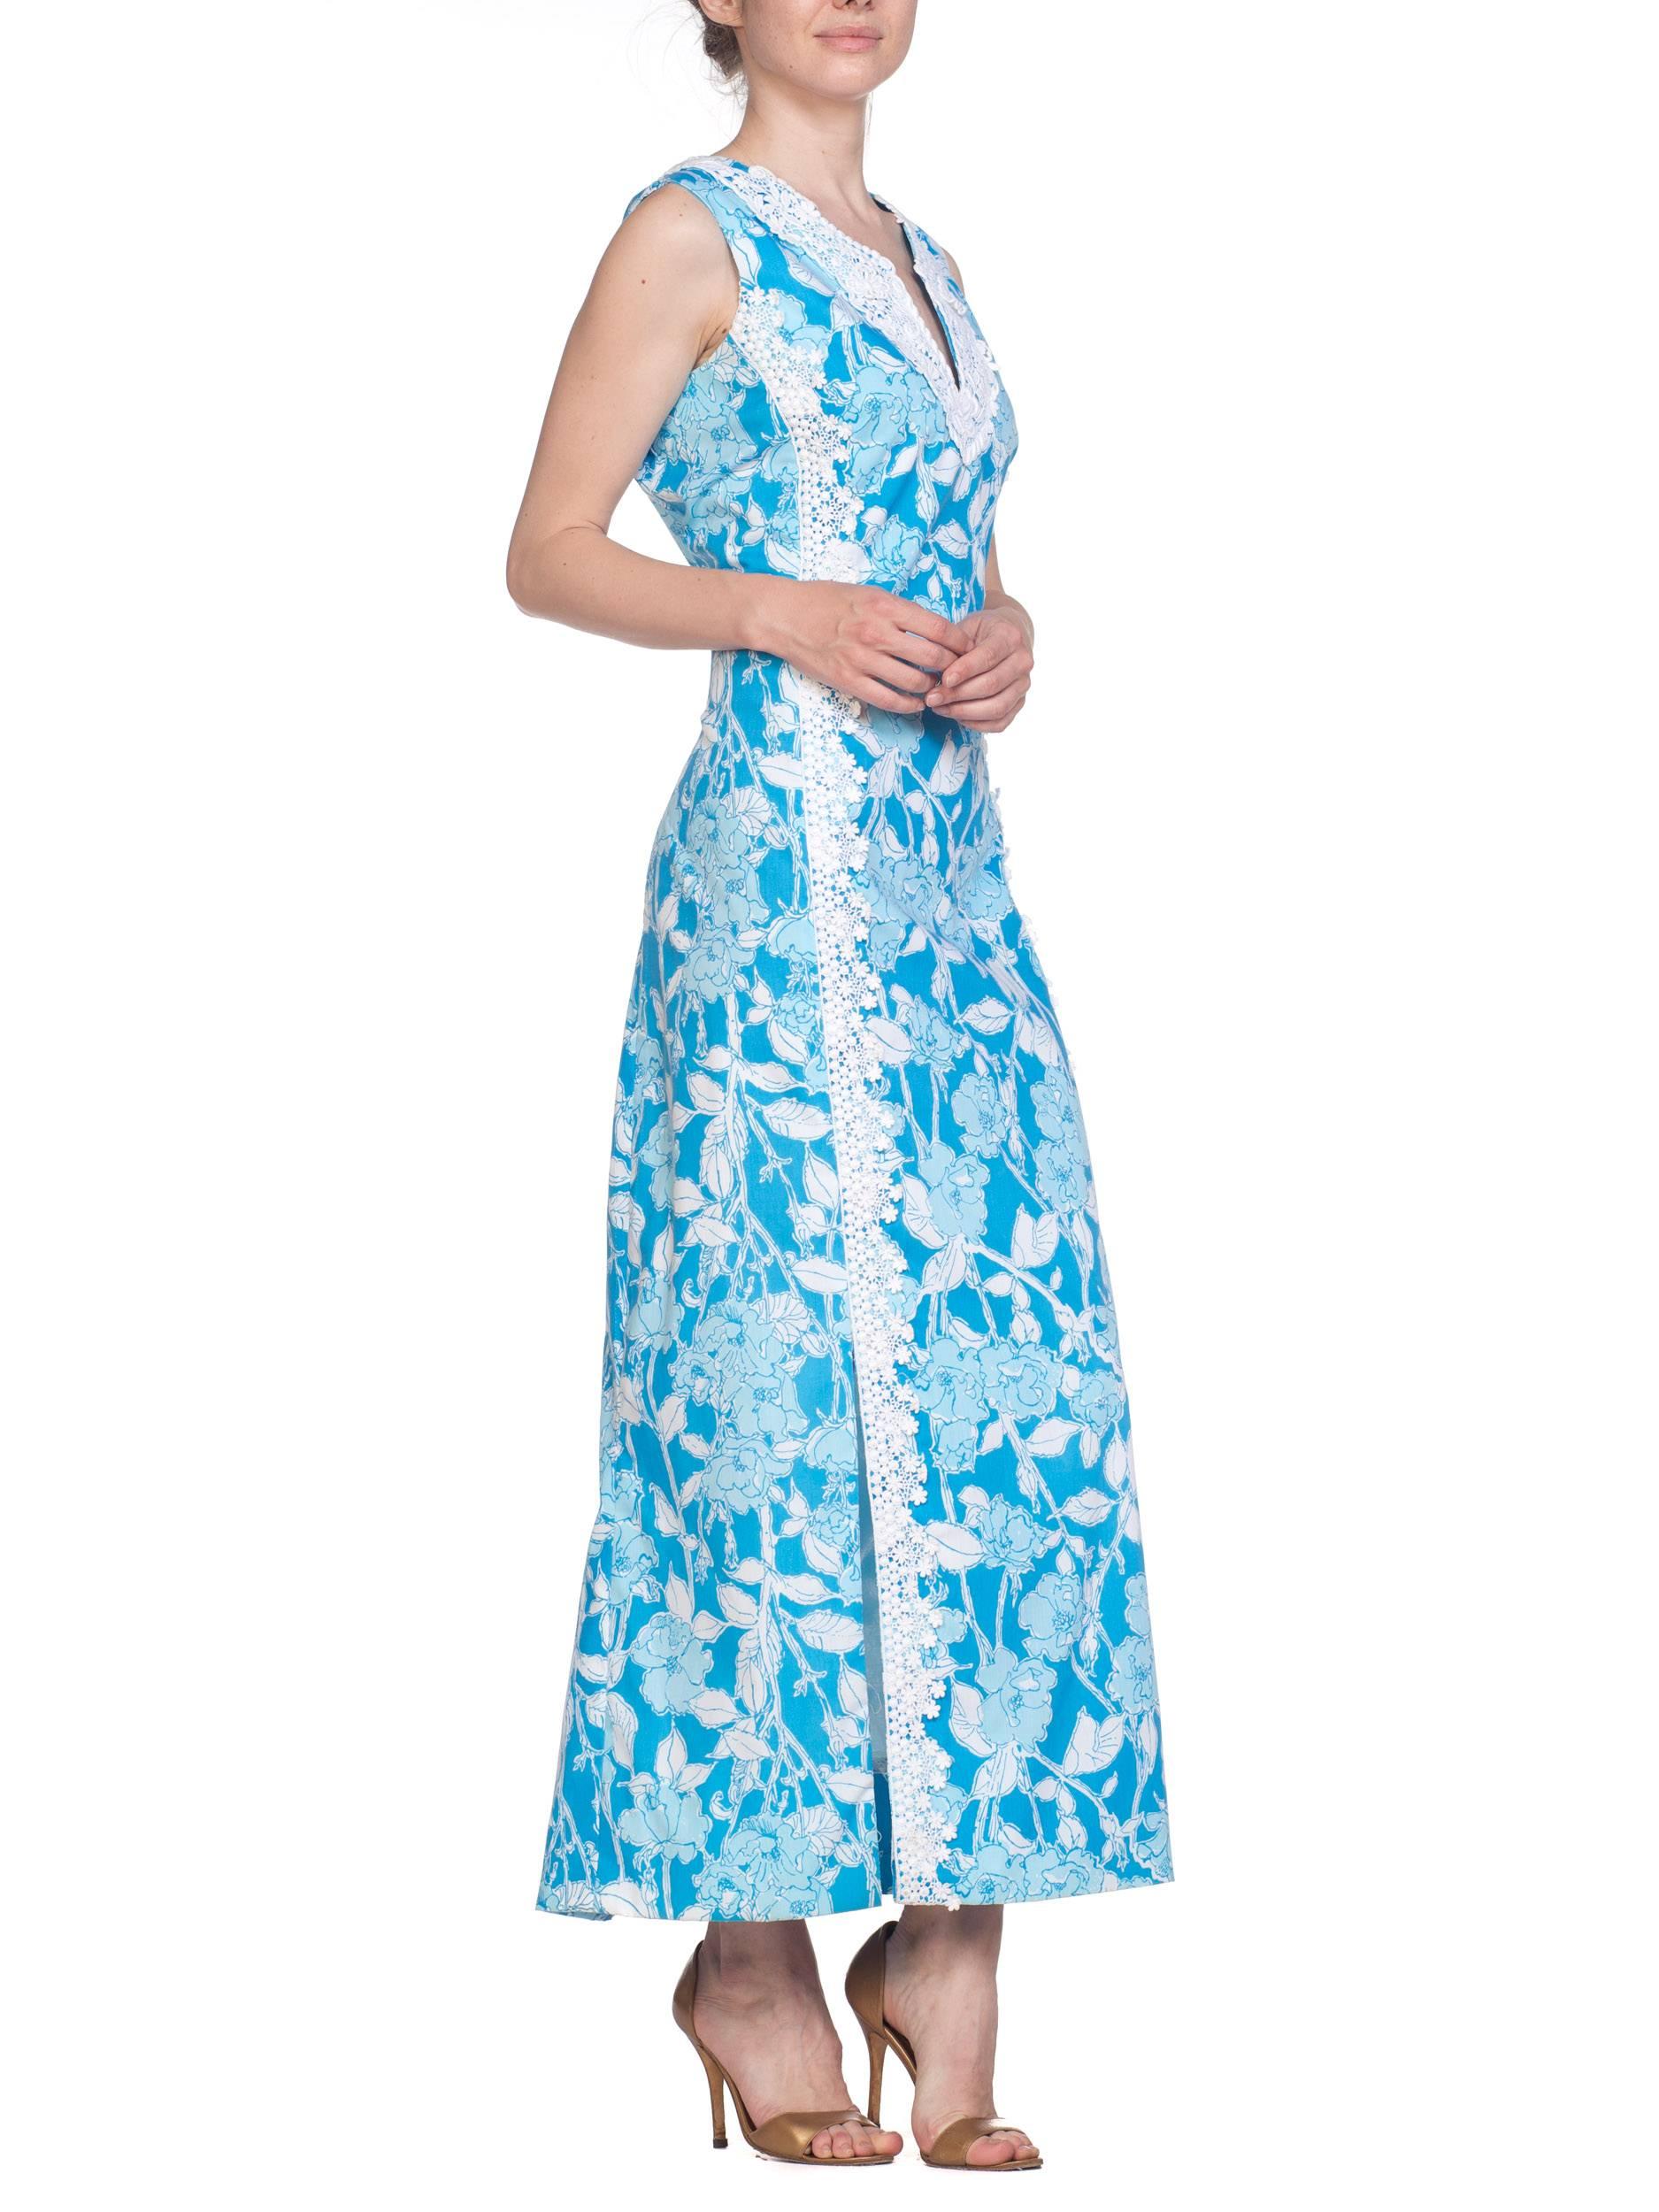 1960S LILY PULITZER Aqua  Floral Cotton Dress With White Lace Flowers Szl 1